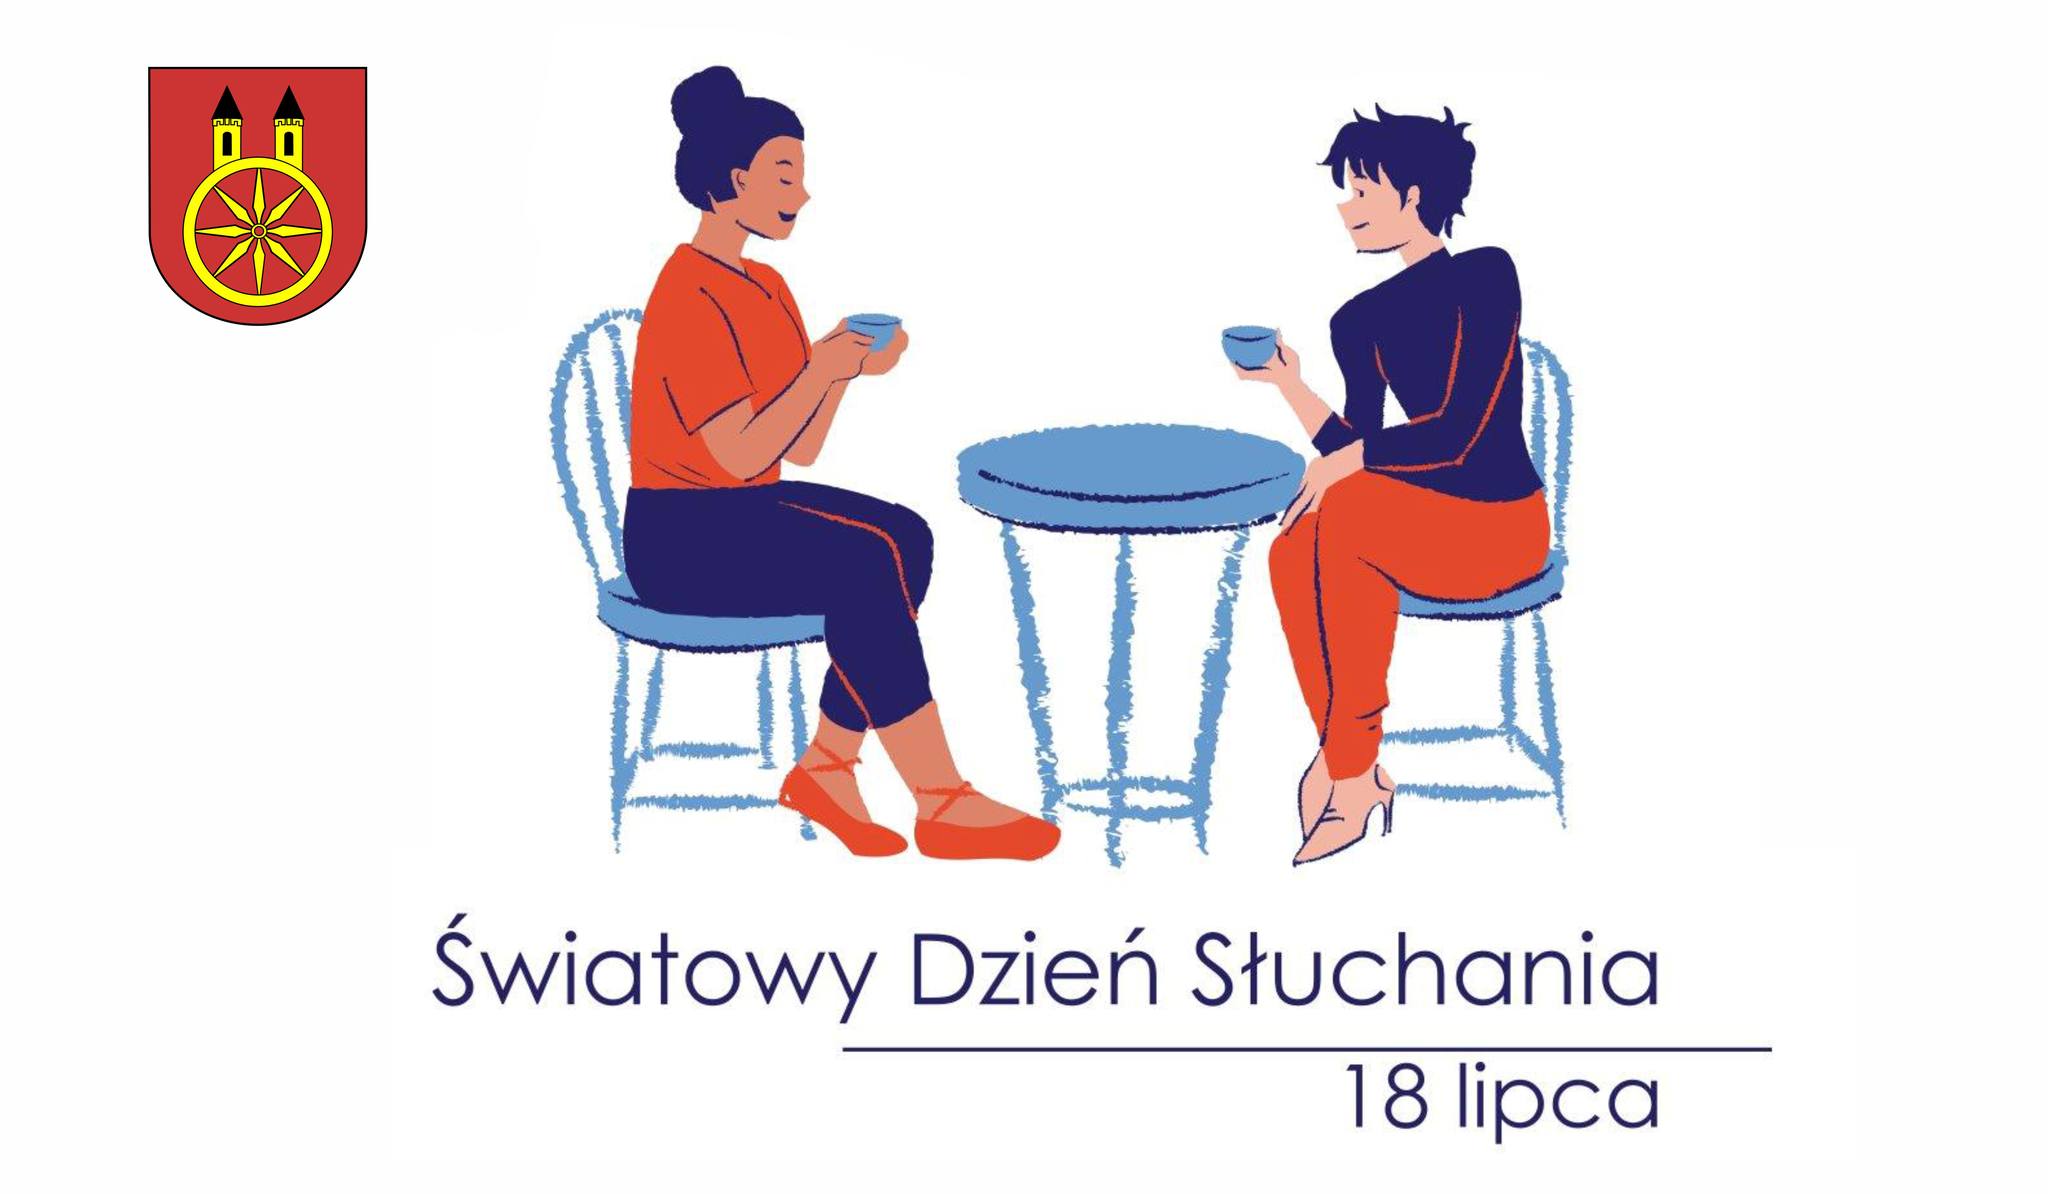 Na planszy widzimy ilustrację promującą Światowy Dzień Słuchania, który przypada 18 lipca. Na rysunku znajdują się postacie dwóch rozmawiających kobiet siedzących przy stoliku z filiżankami w dłoniach. W lewym górnym rogu herb miasta Koła.